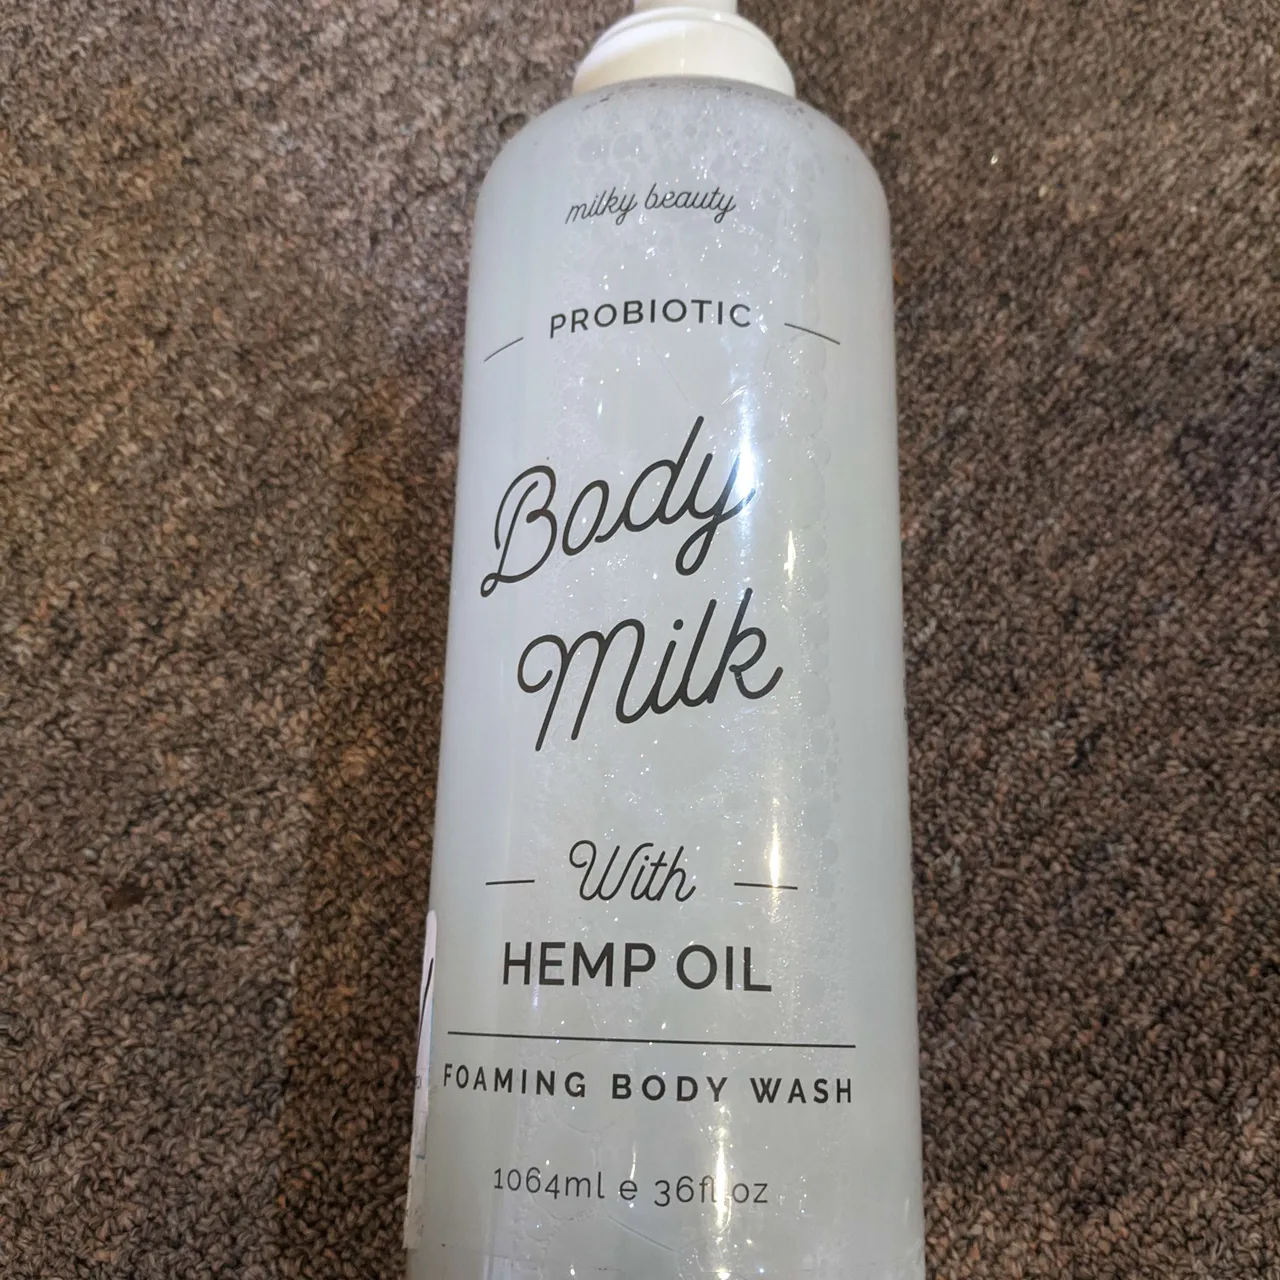 Probiotic Body Milk with Hemp Oil photo 1